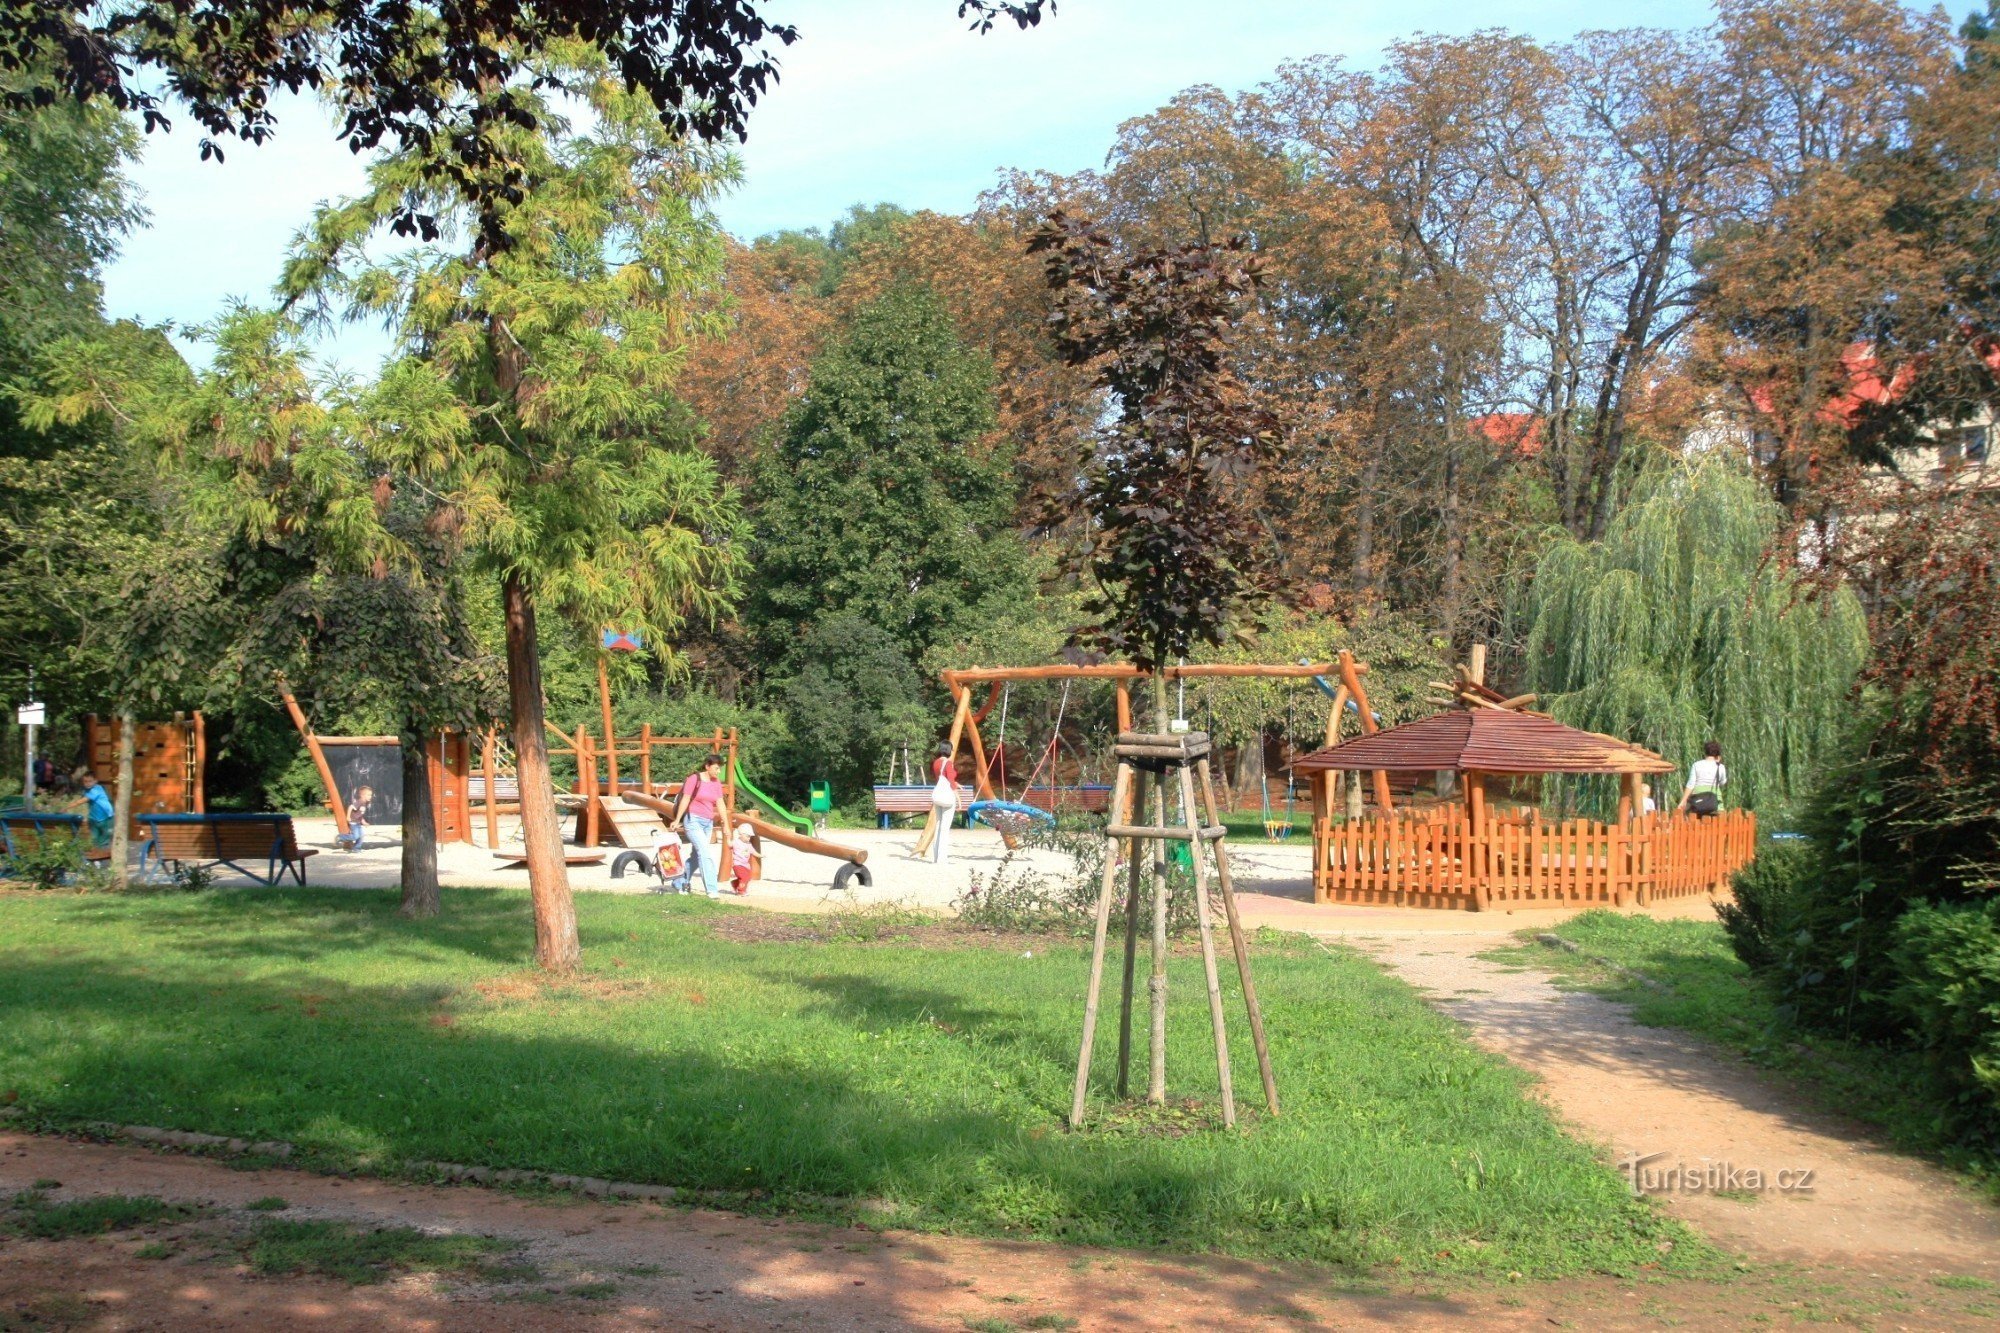 Дитячий майданчик в парку